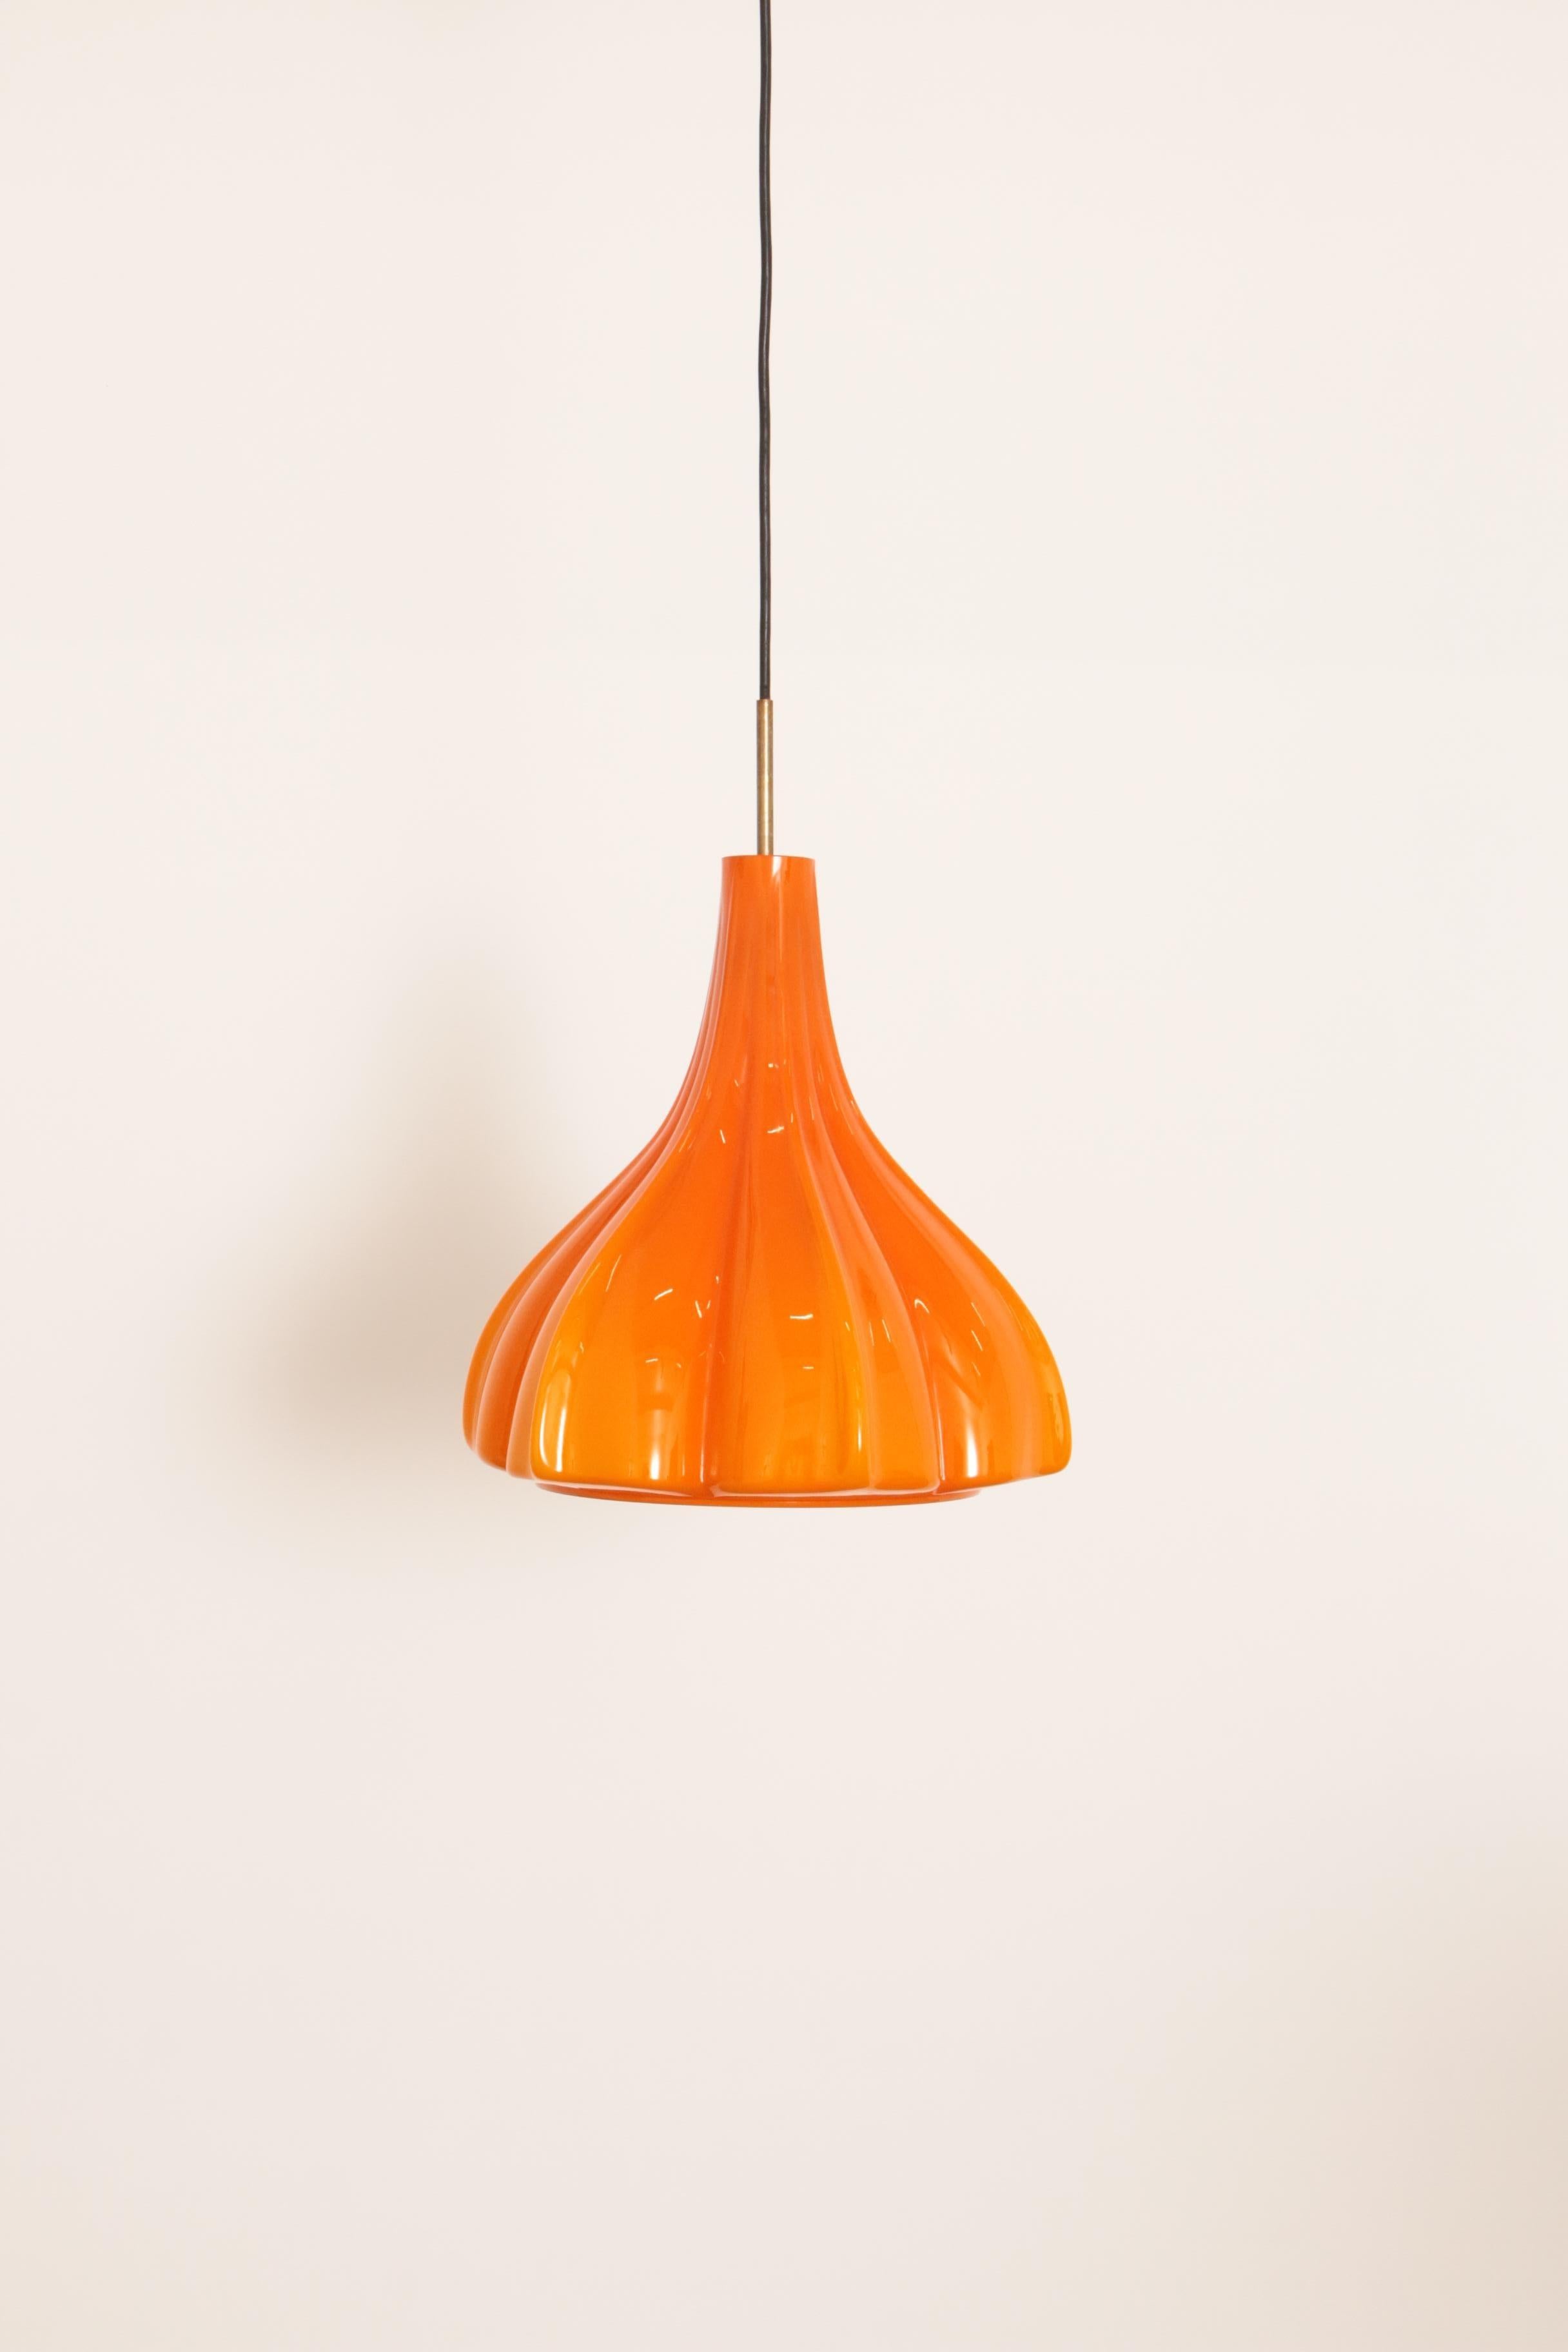 Suspension en verre orange façonné particulièrement rare de Peill et Putzler, produite vers 1960 en Allemagne. Il a une belle couleur orange vif et donne une lumière très chaude.

Design/One typique des fabricants allemands. Plus de suspensions en